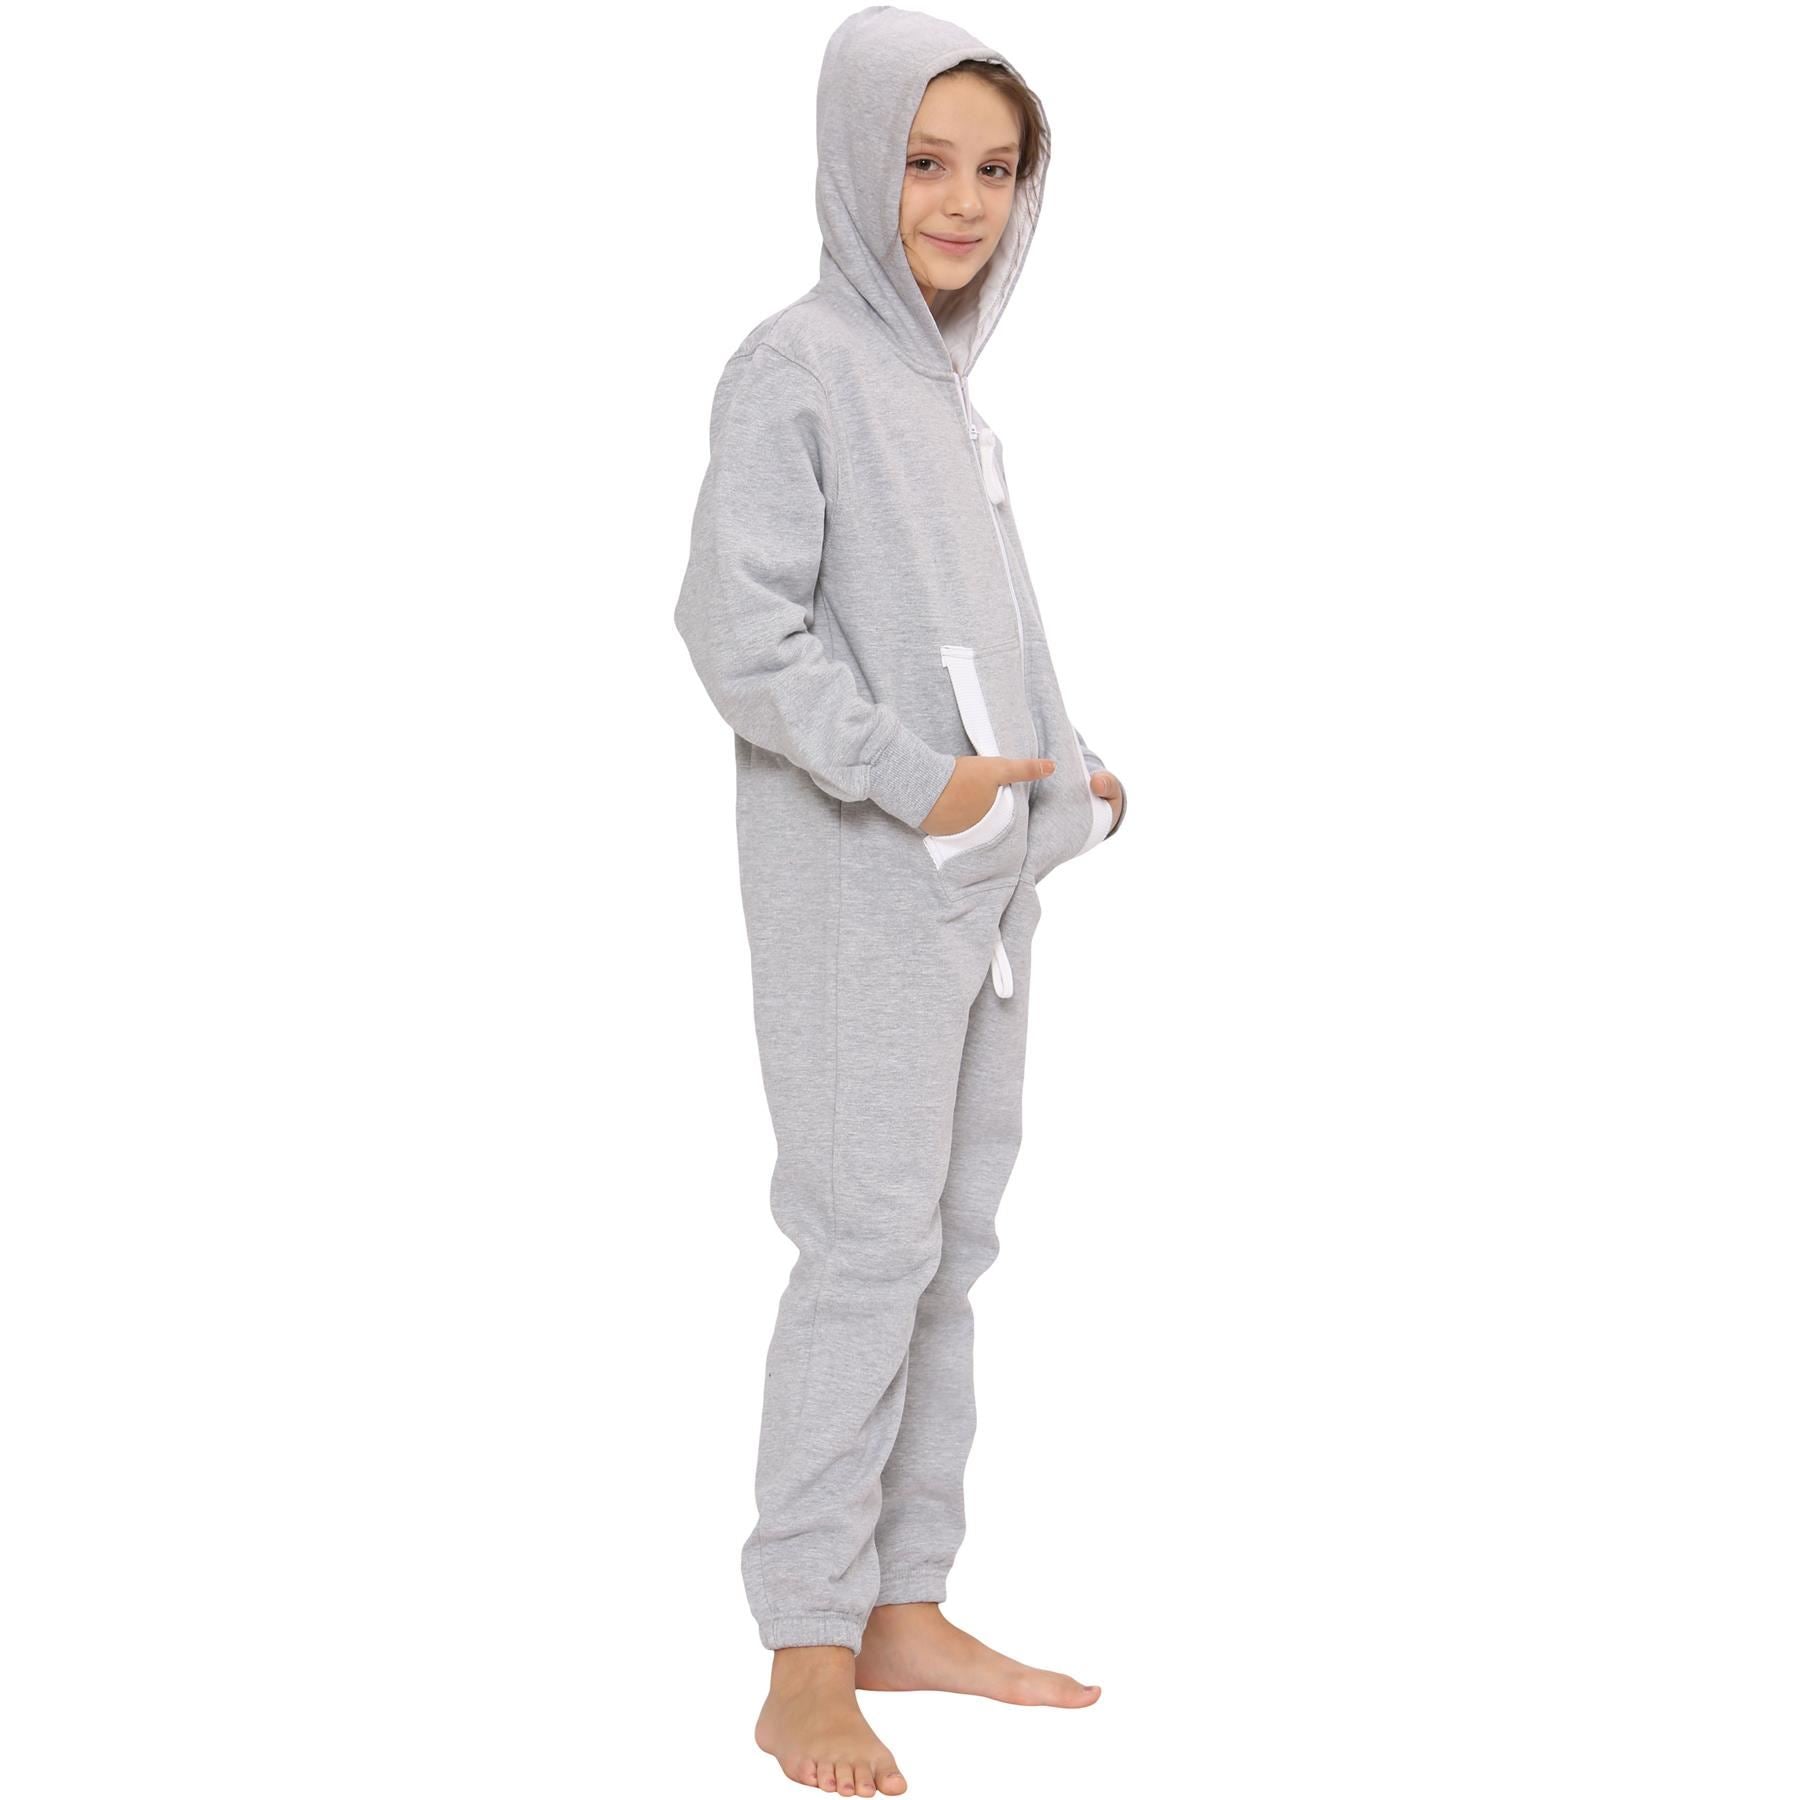 Girls Boys Grey Fleece Pyjamas Sleepsuit Onesie